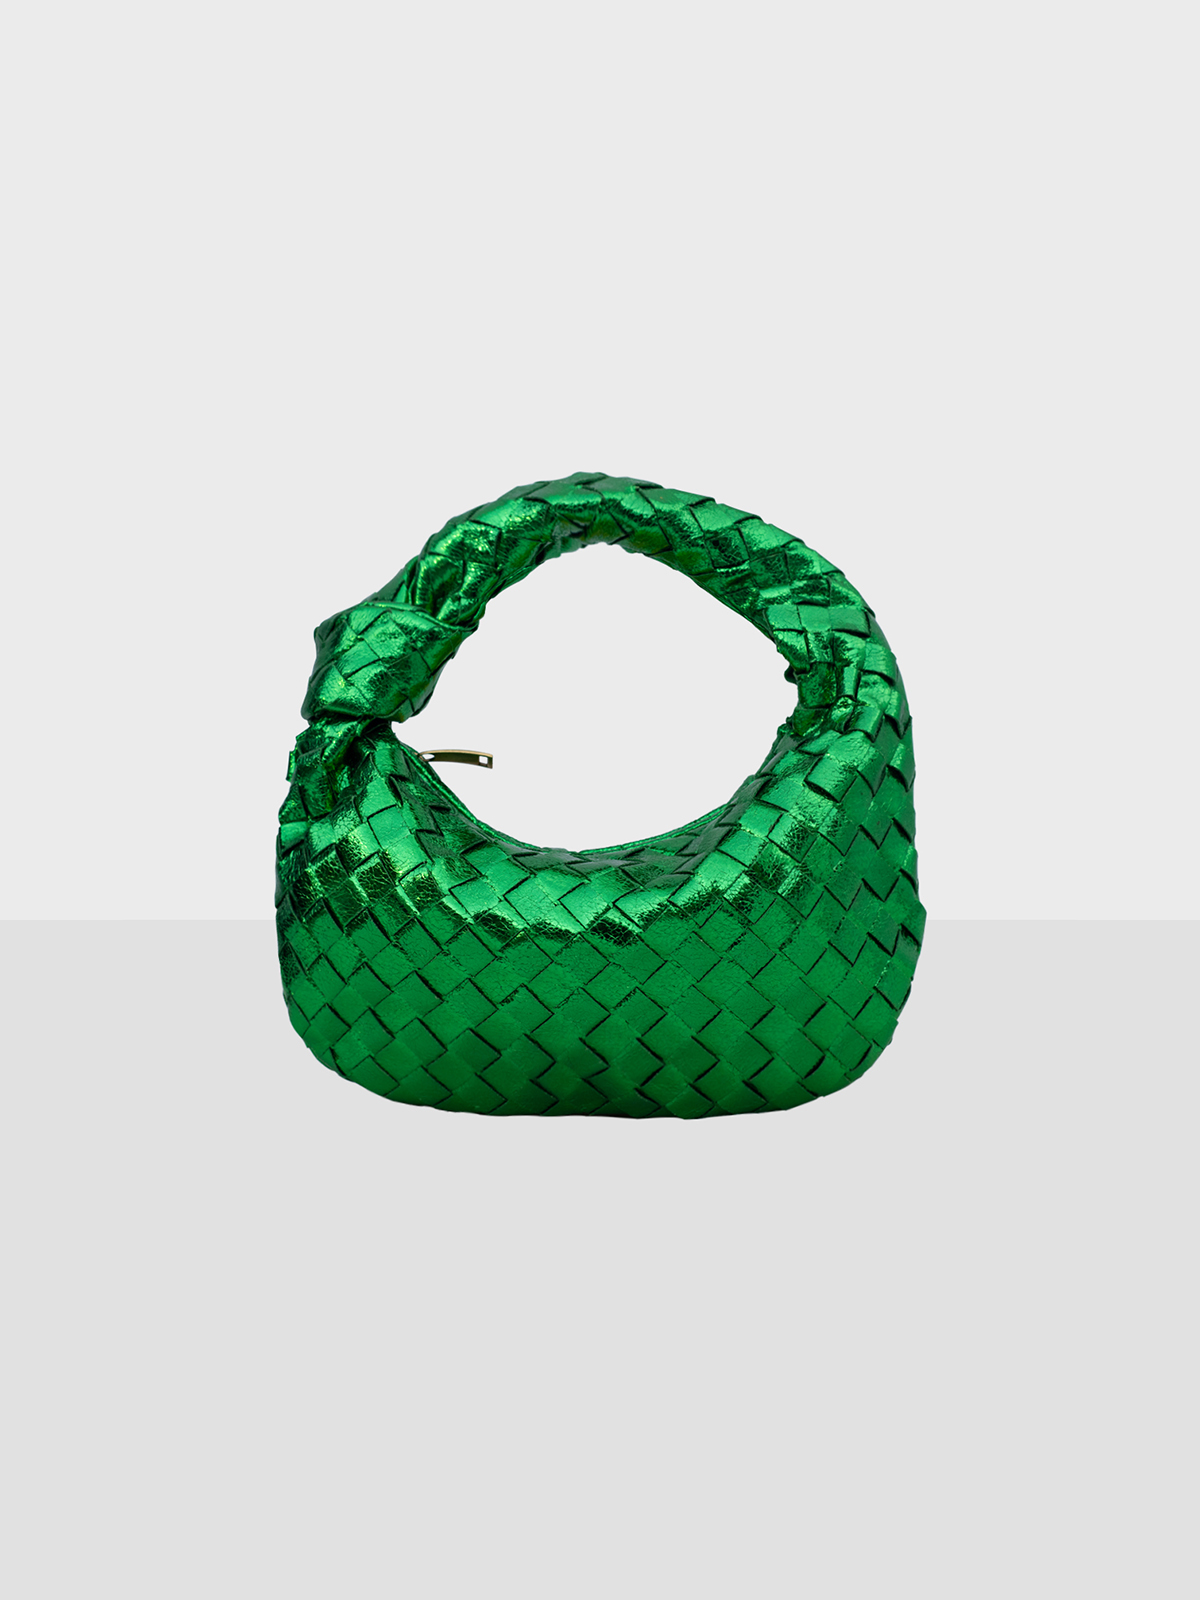 Hobo Metallic Green Bag by KUKU